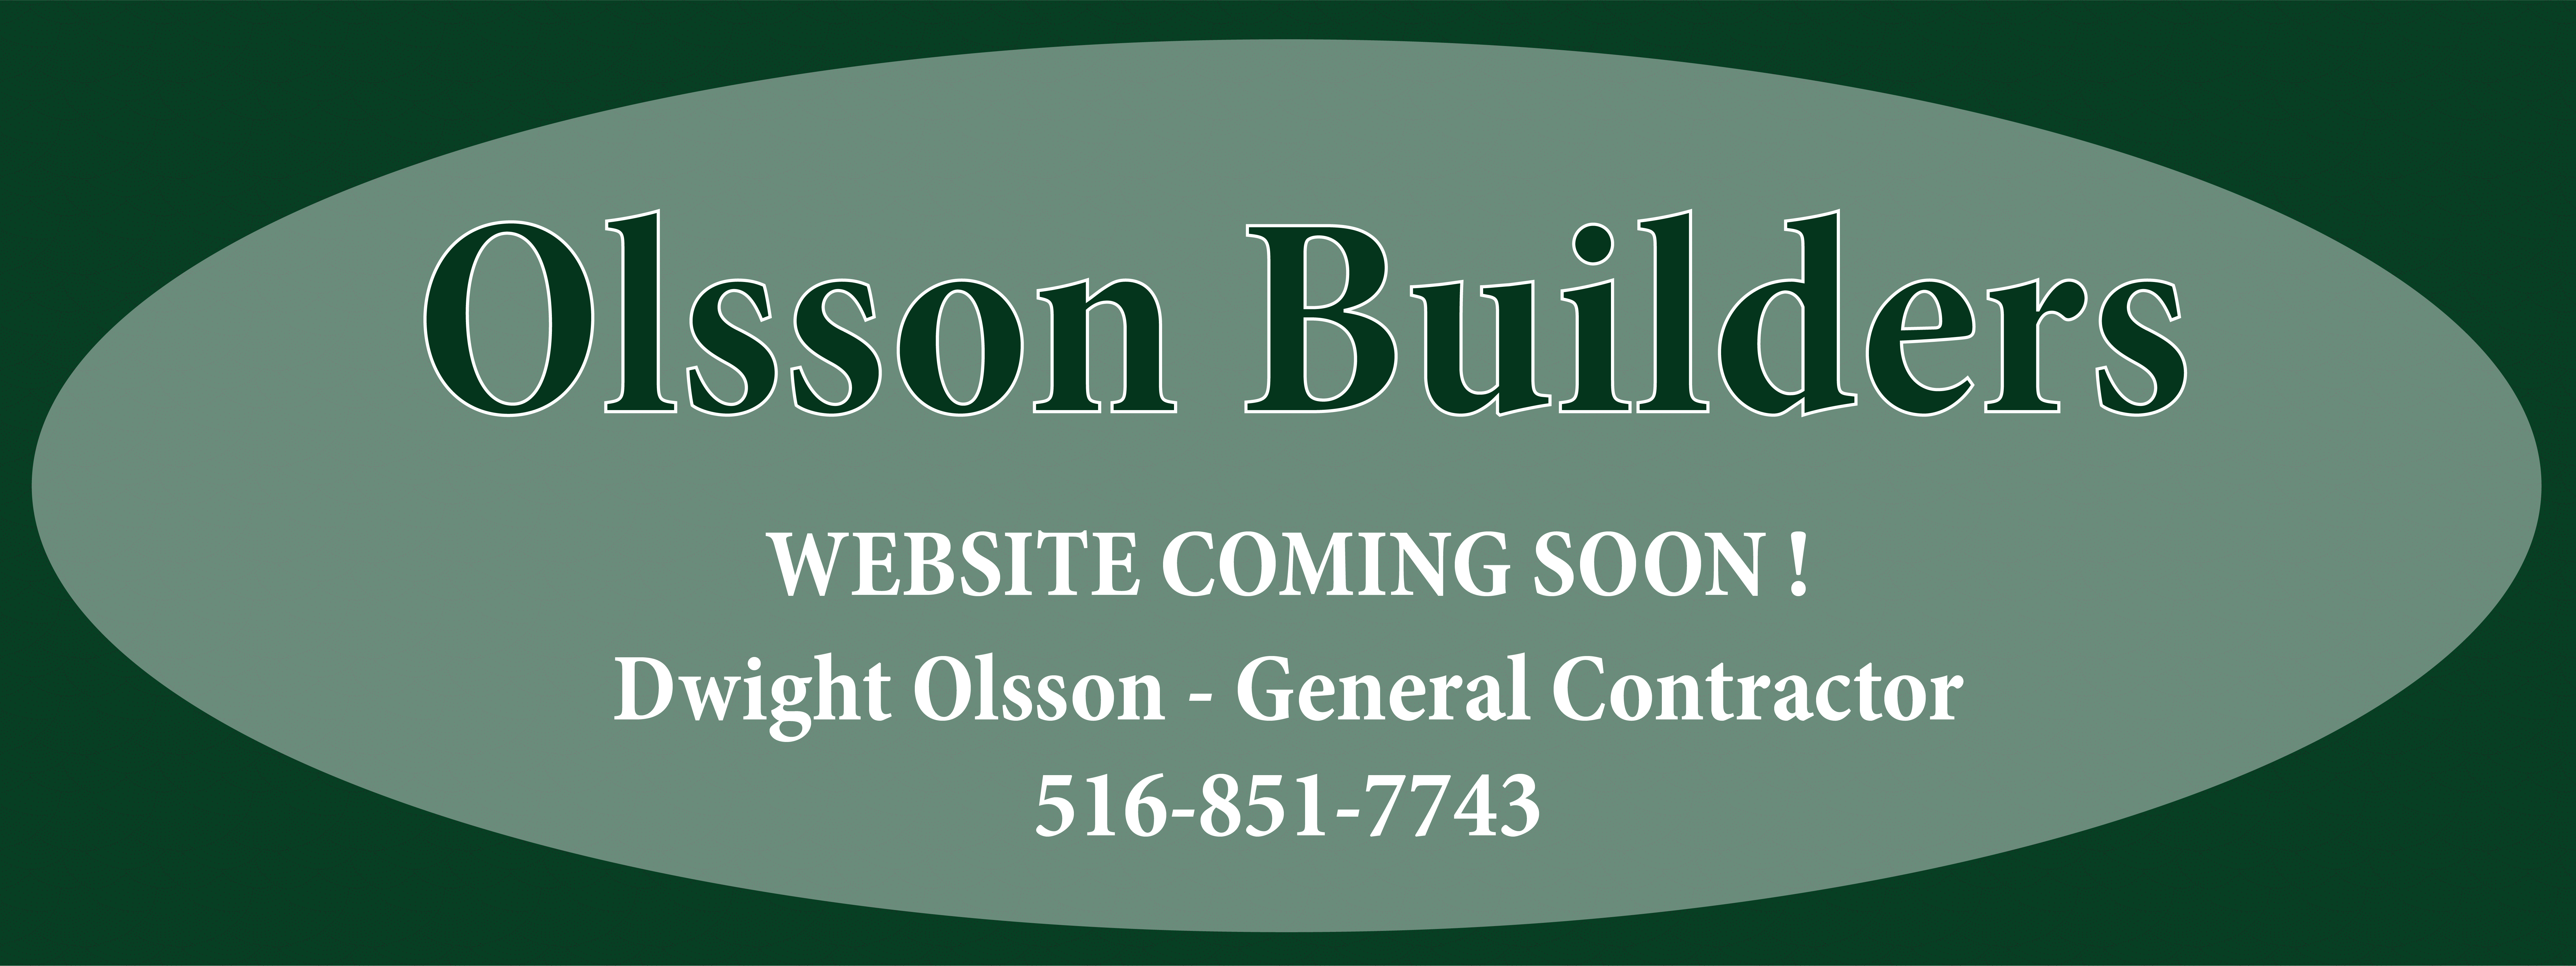 Olsson Builders